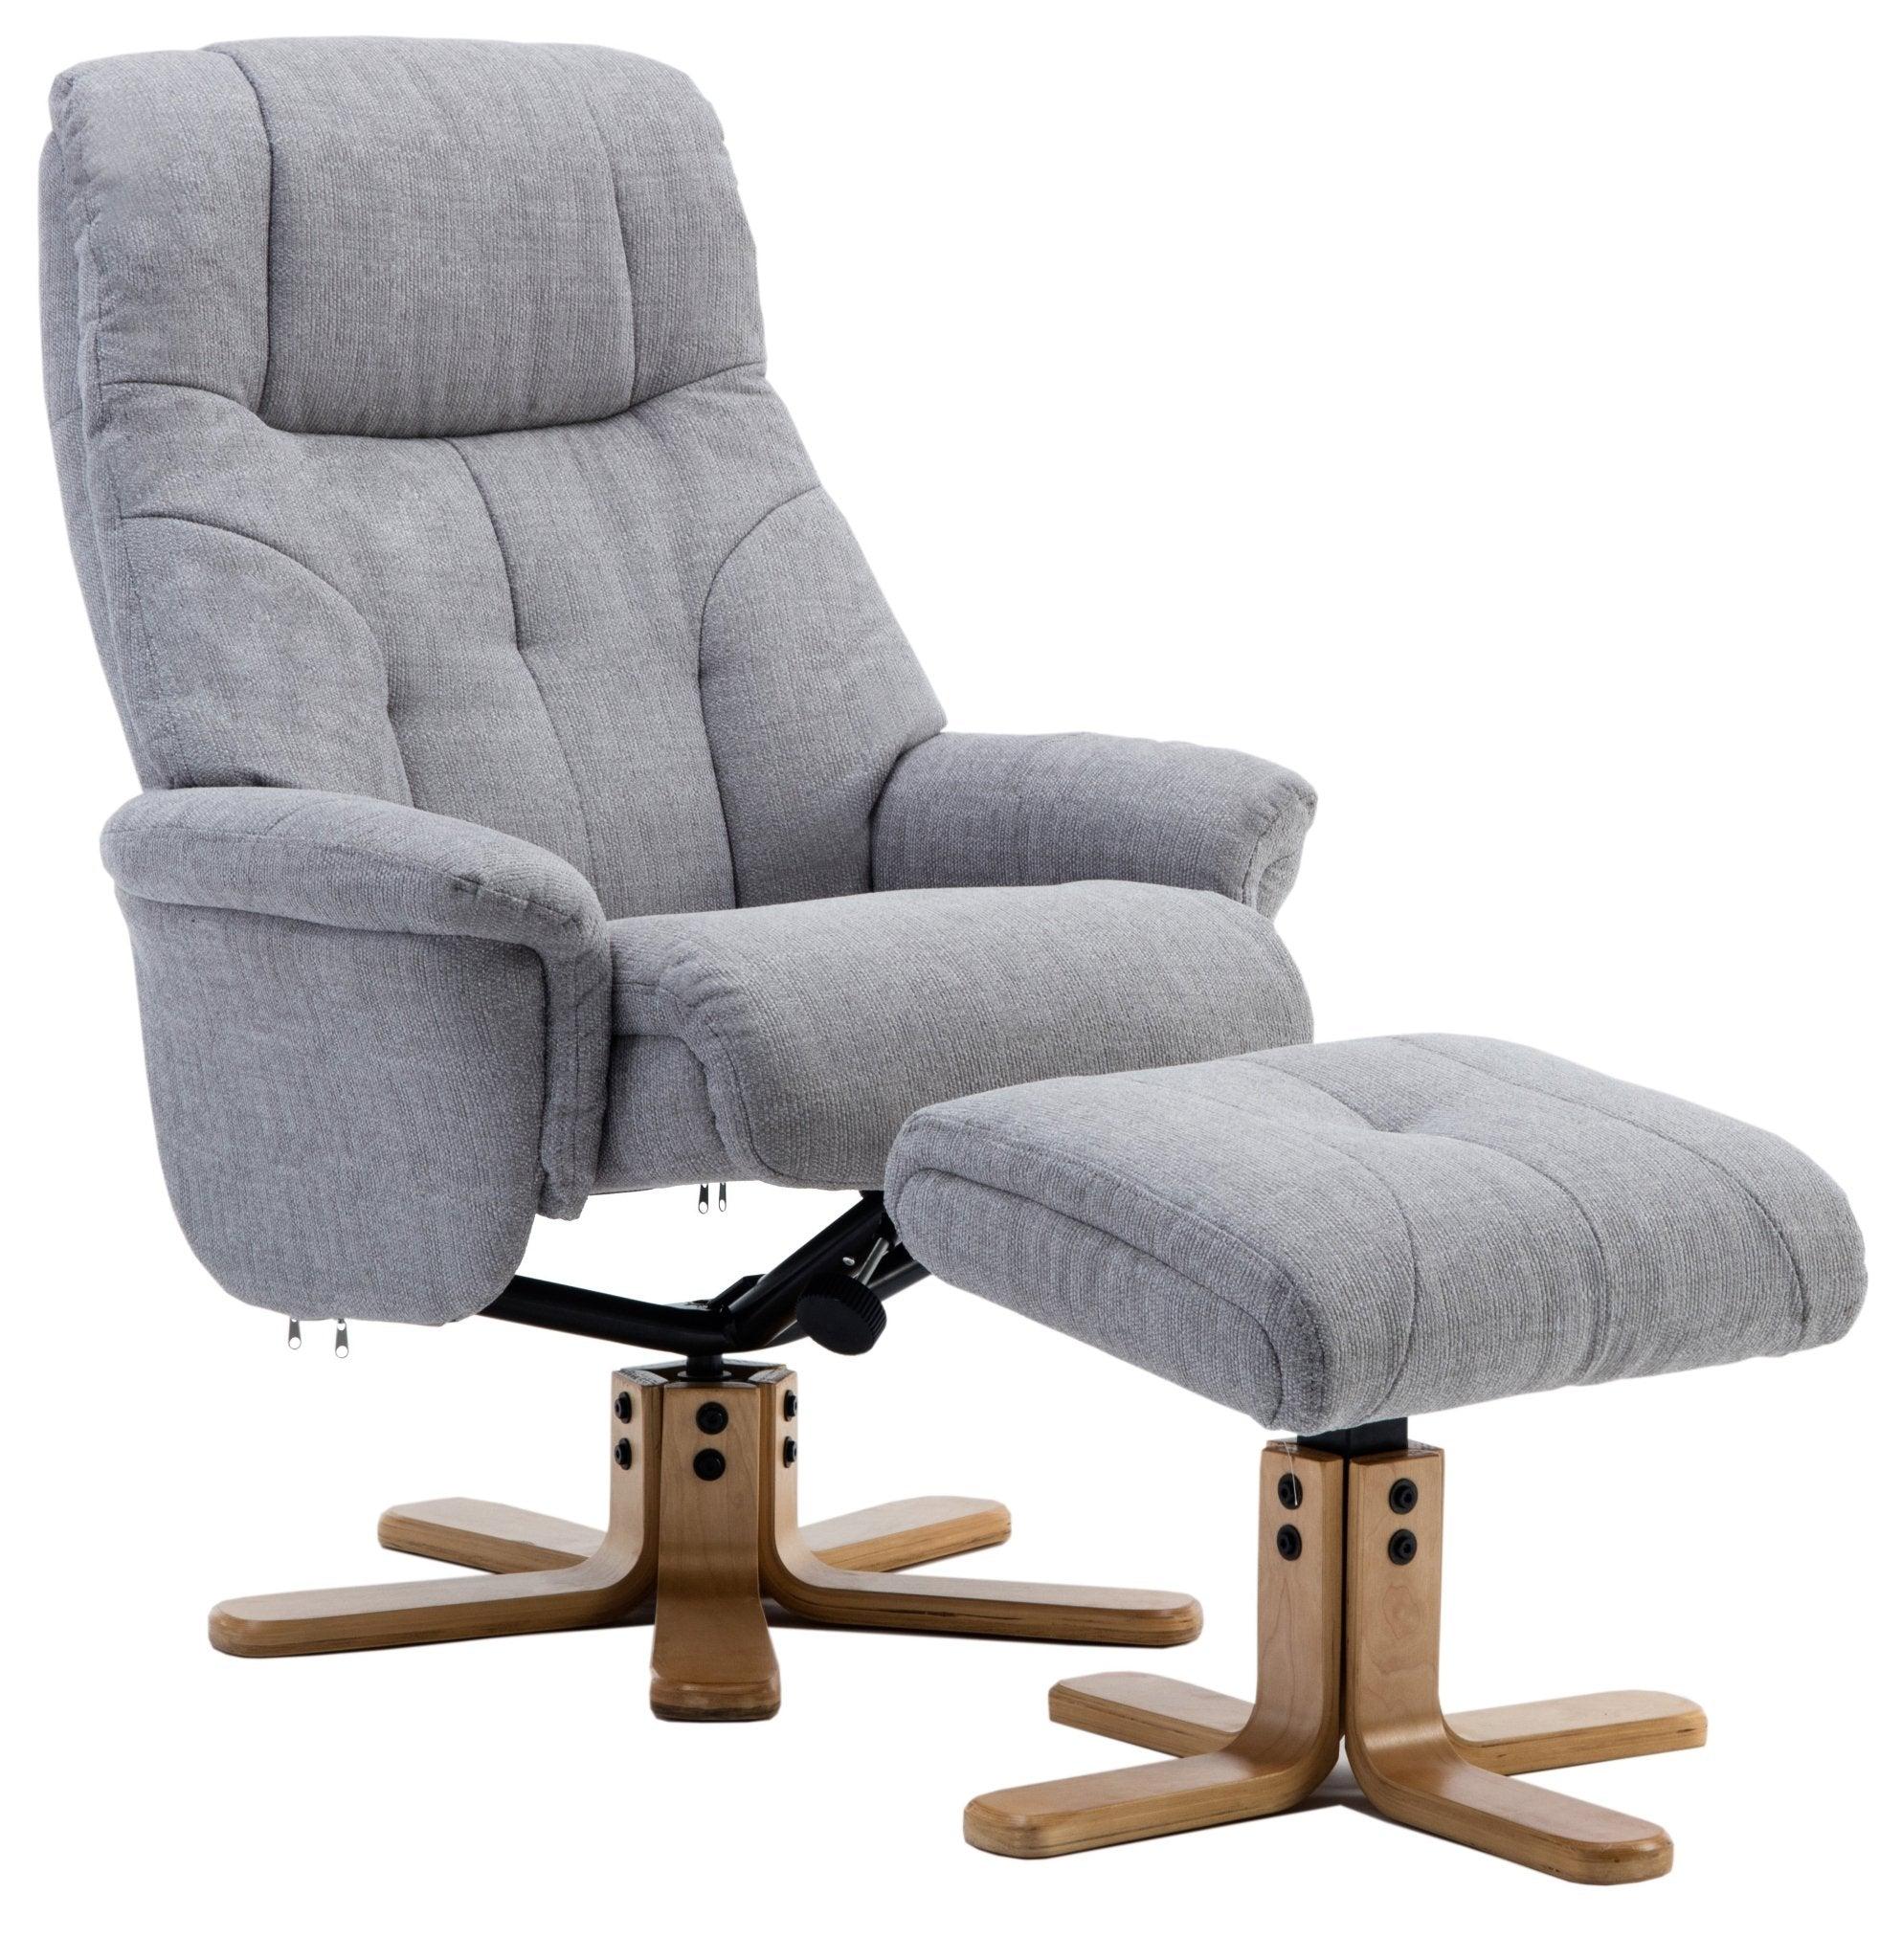 Recliner - denver light grey - crimblefest furniture - image 1